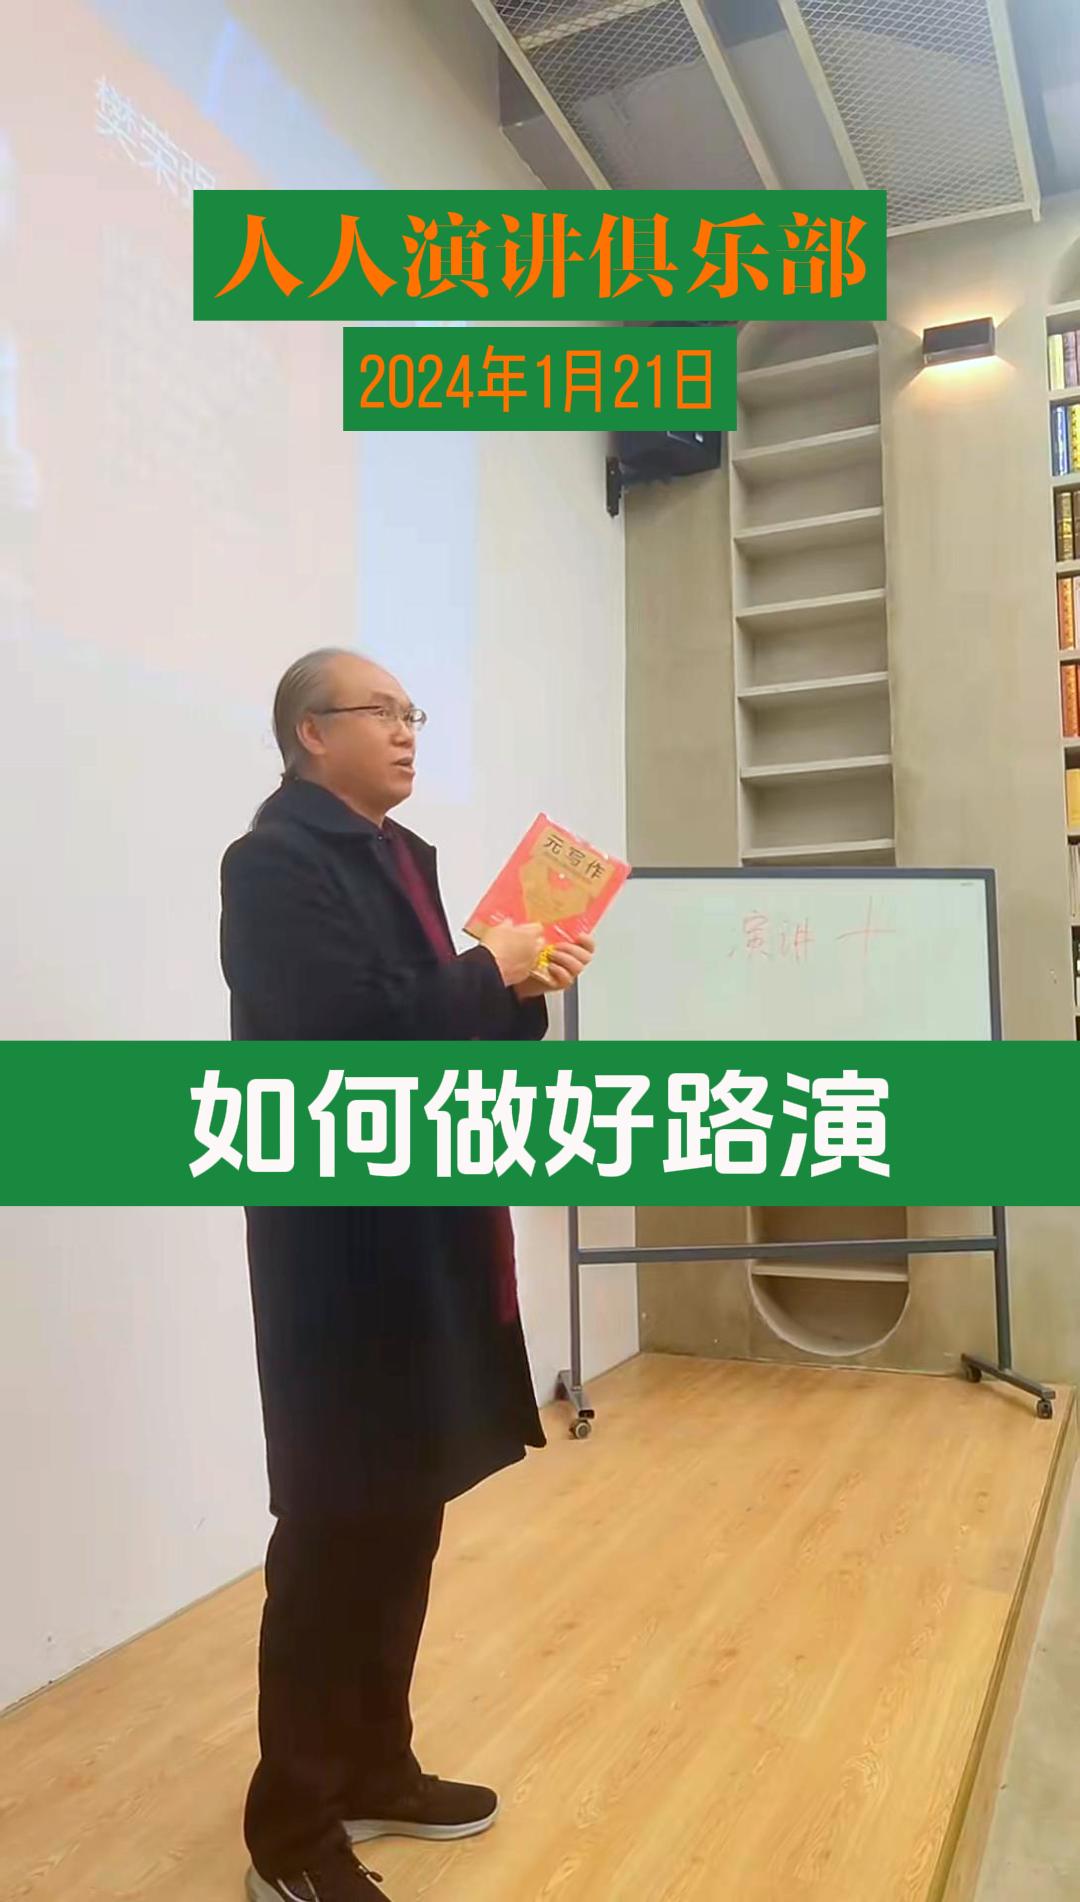 1月21日樊荣强人人演讲俱乐部路演点评-封面